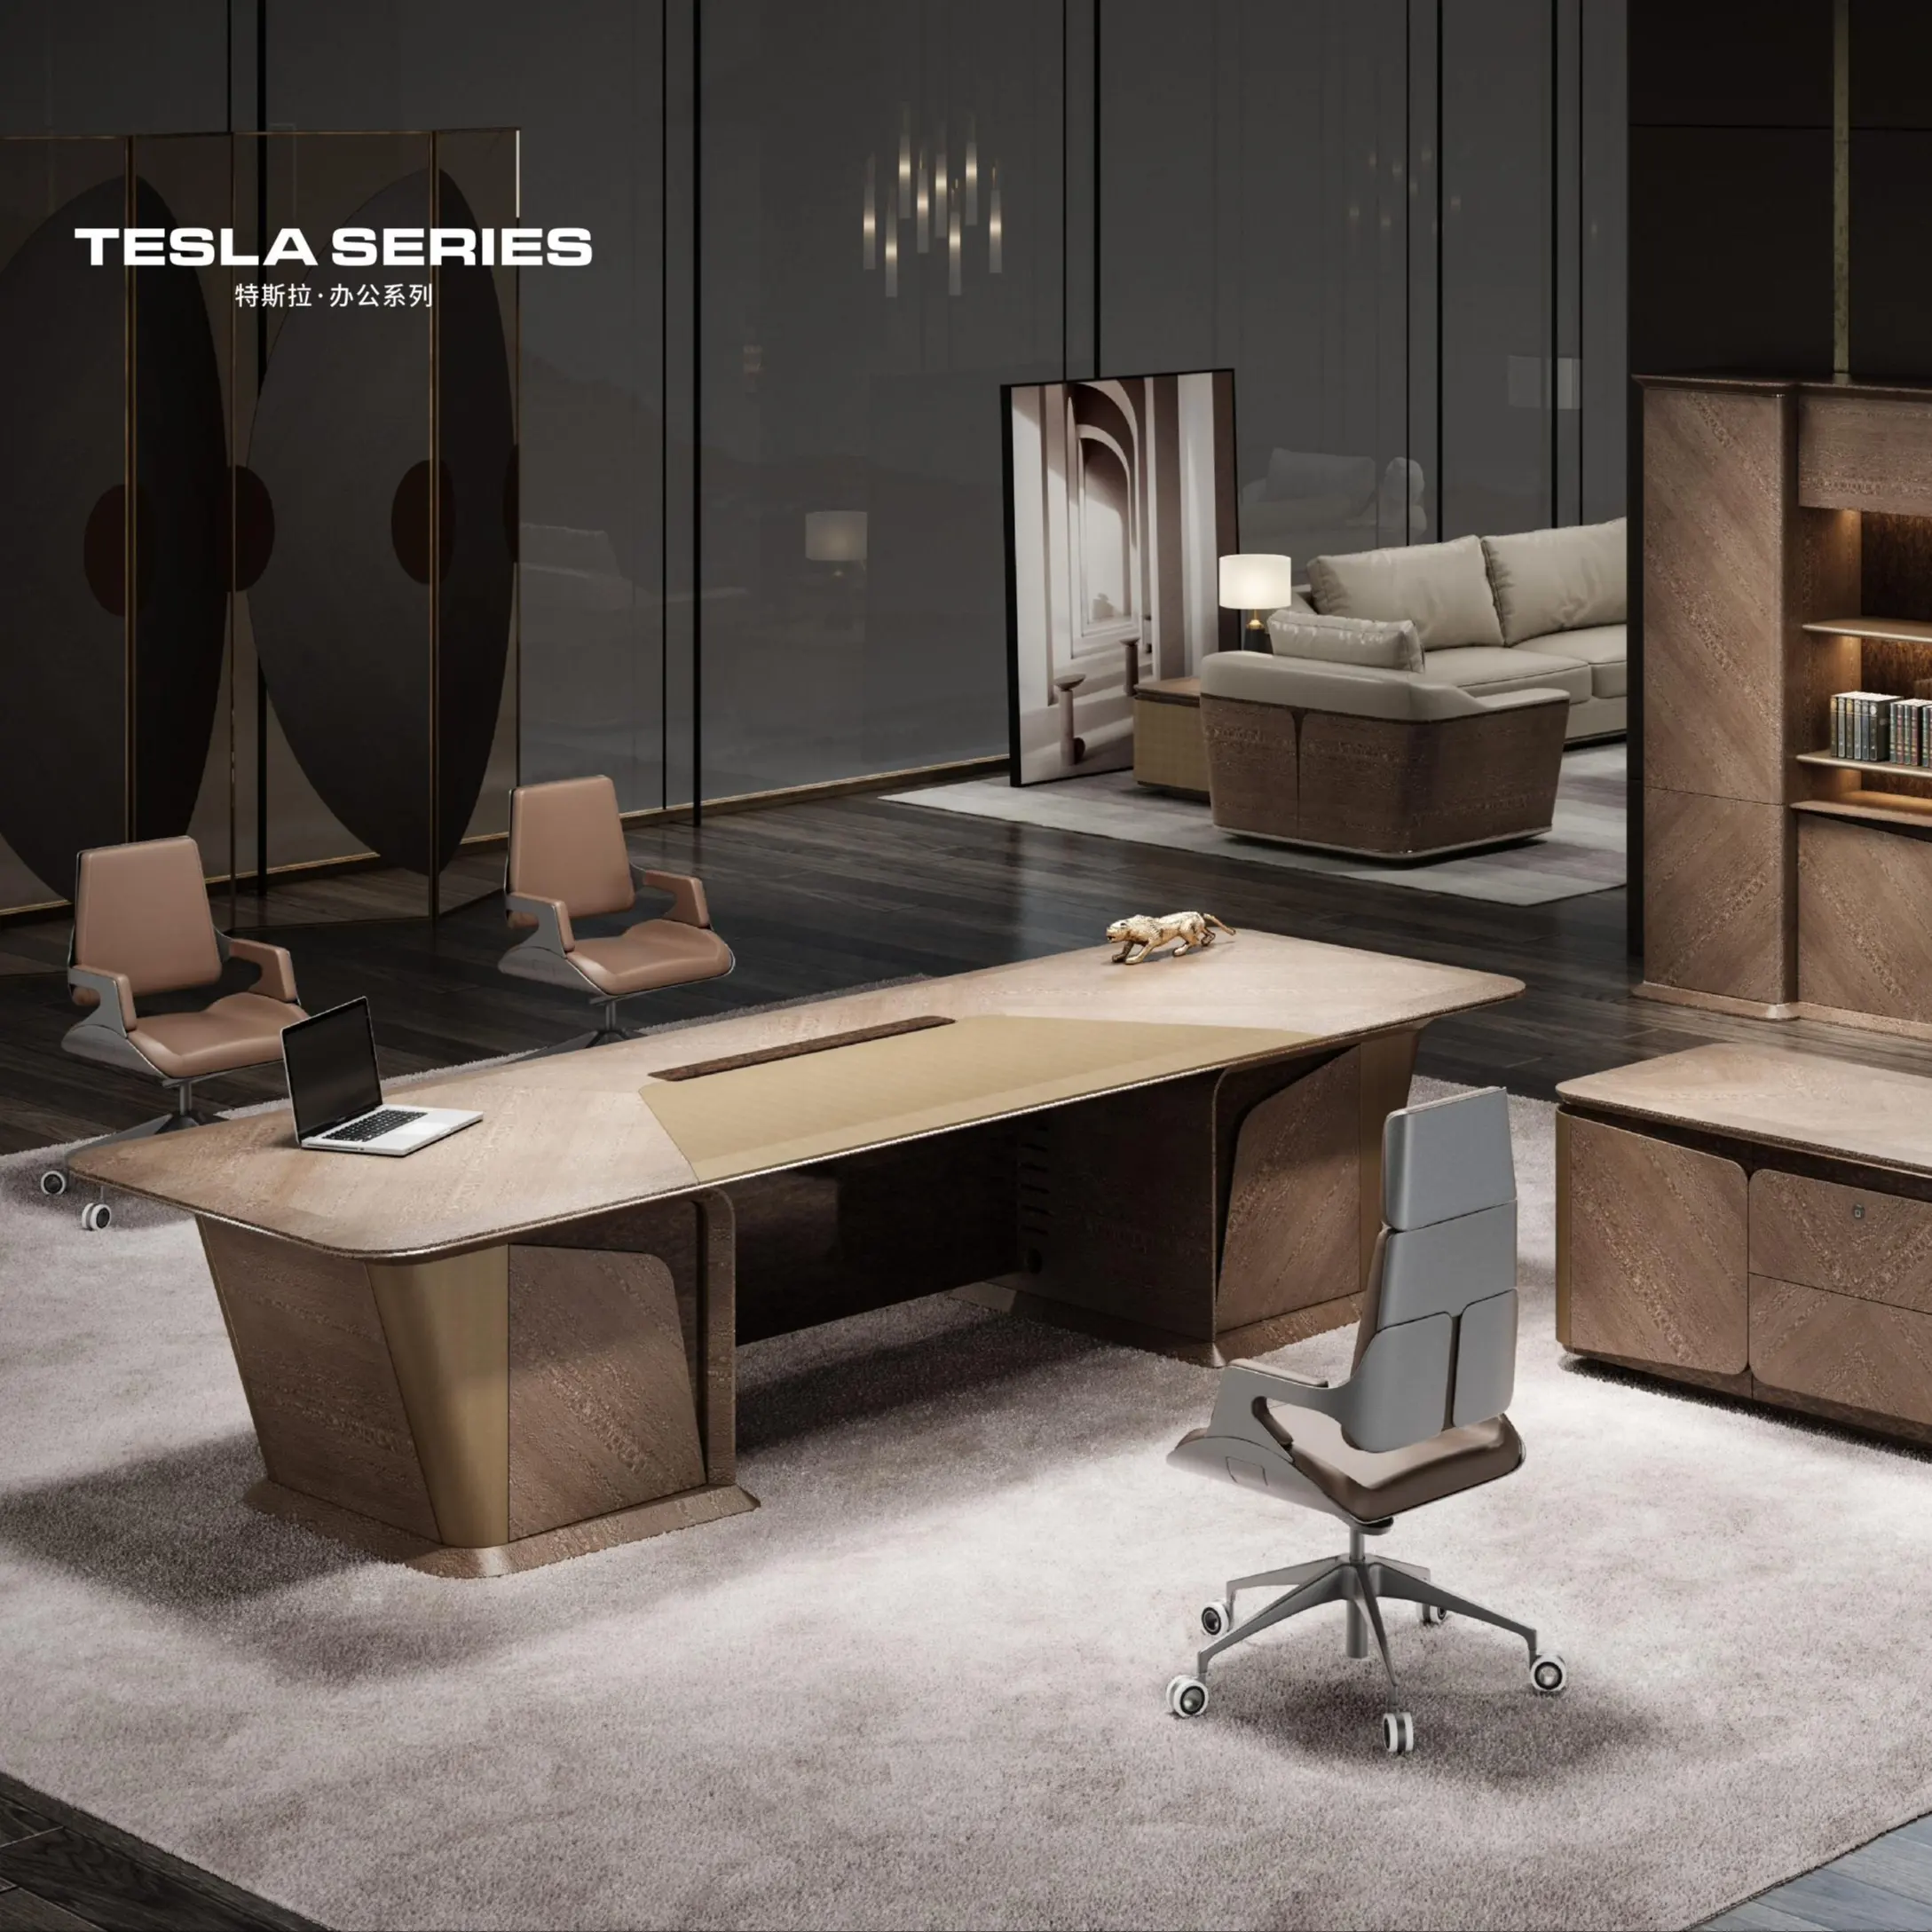 Il boss moderno metallo amministrativi scrivania scrivania in legno disegni di mobili per ufficio